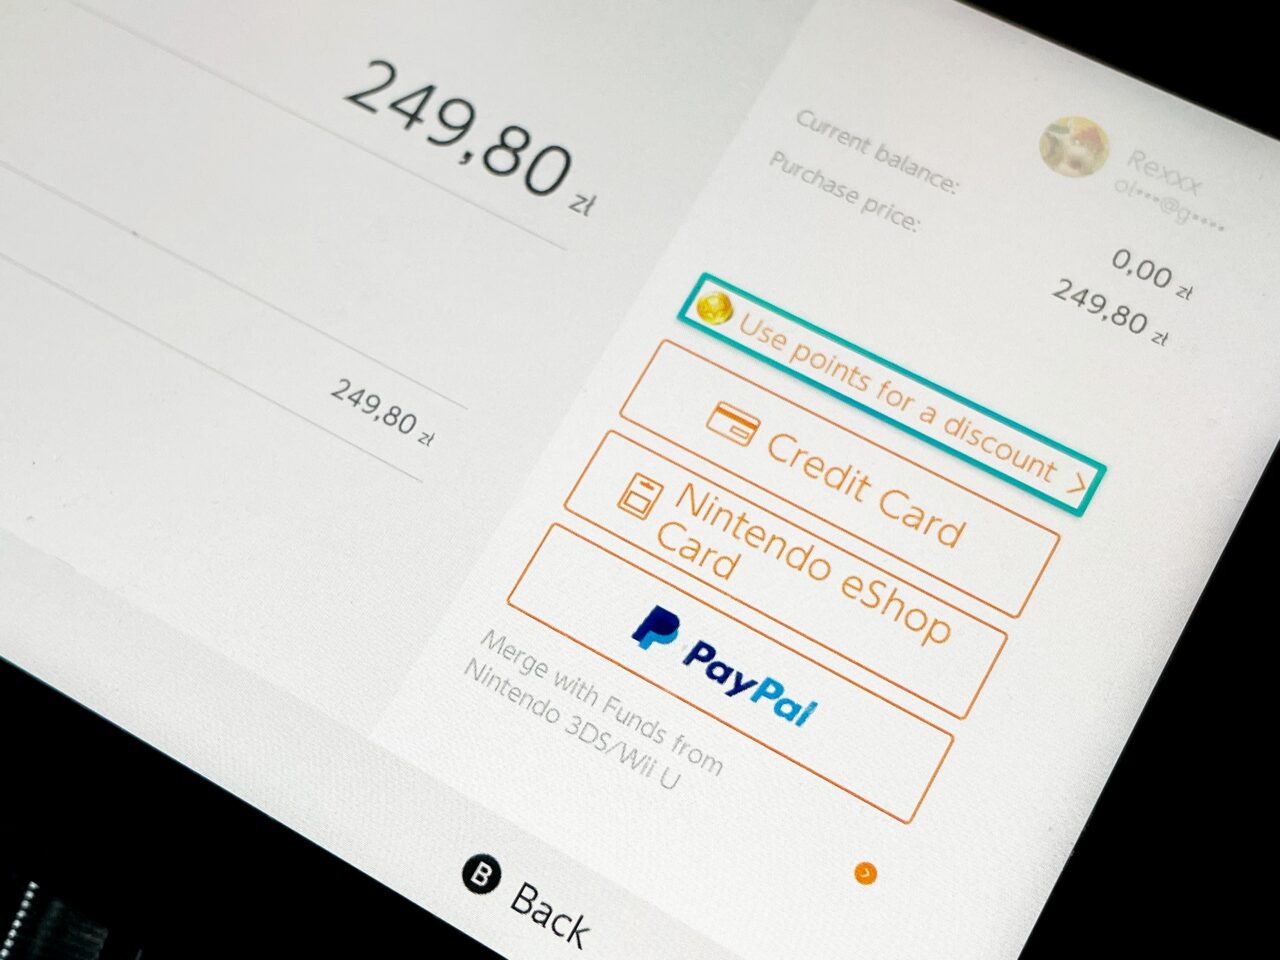 Ekran interfejsu płatności online z zaznaczoną opcją "Use points for a discount", oraz dostępnymi metodami płatności: kartą kredytową, kartą Nintendo eShop i PayPalem. Na ekranie widoczna kwota 249,80 zł.